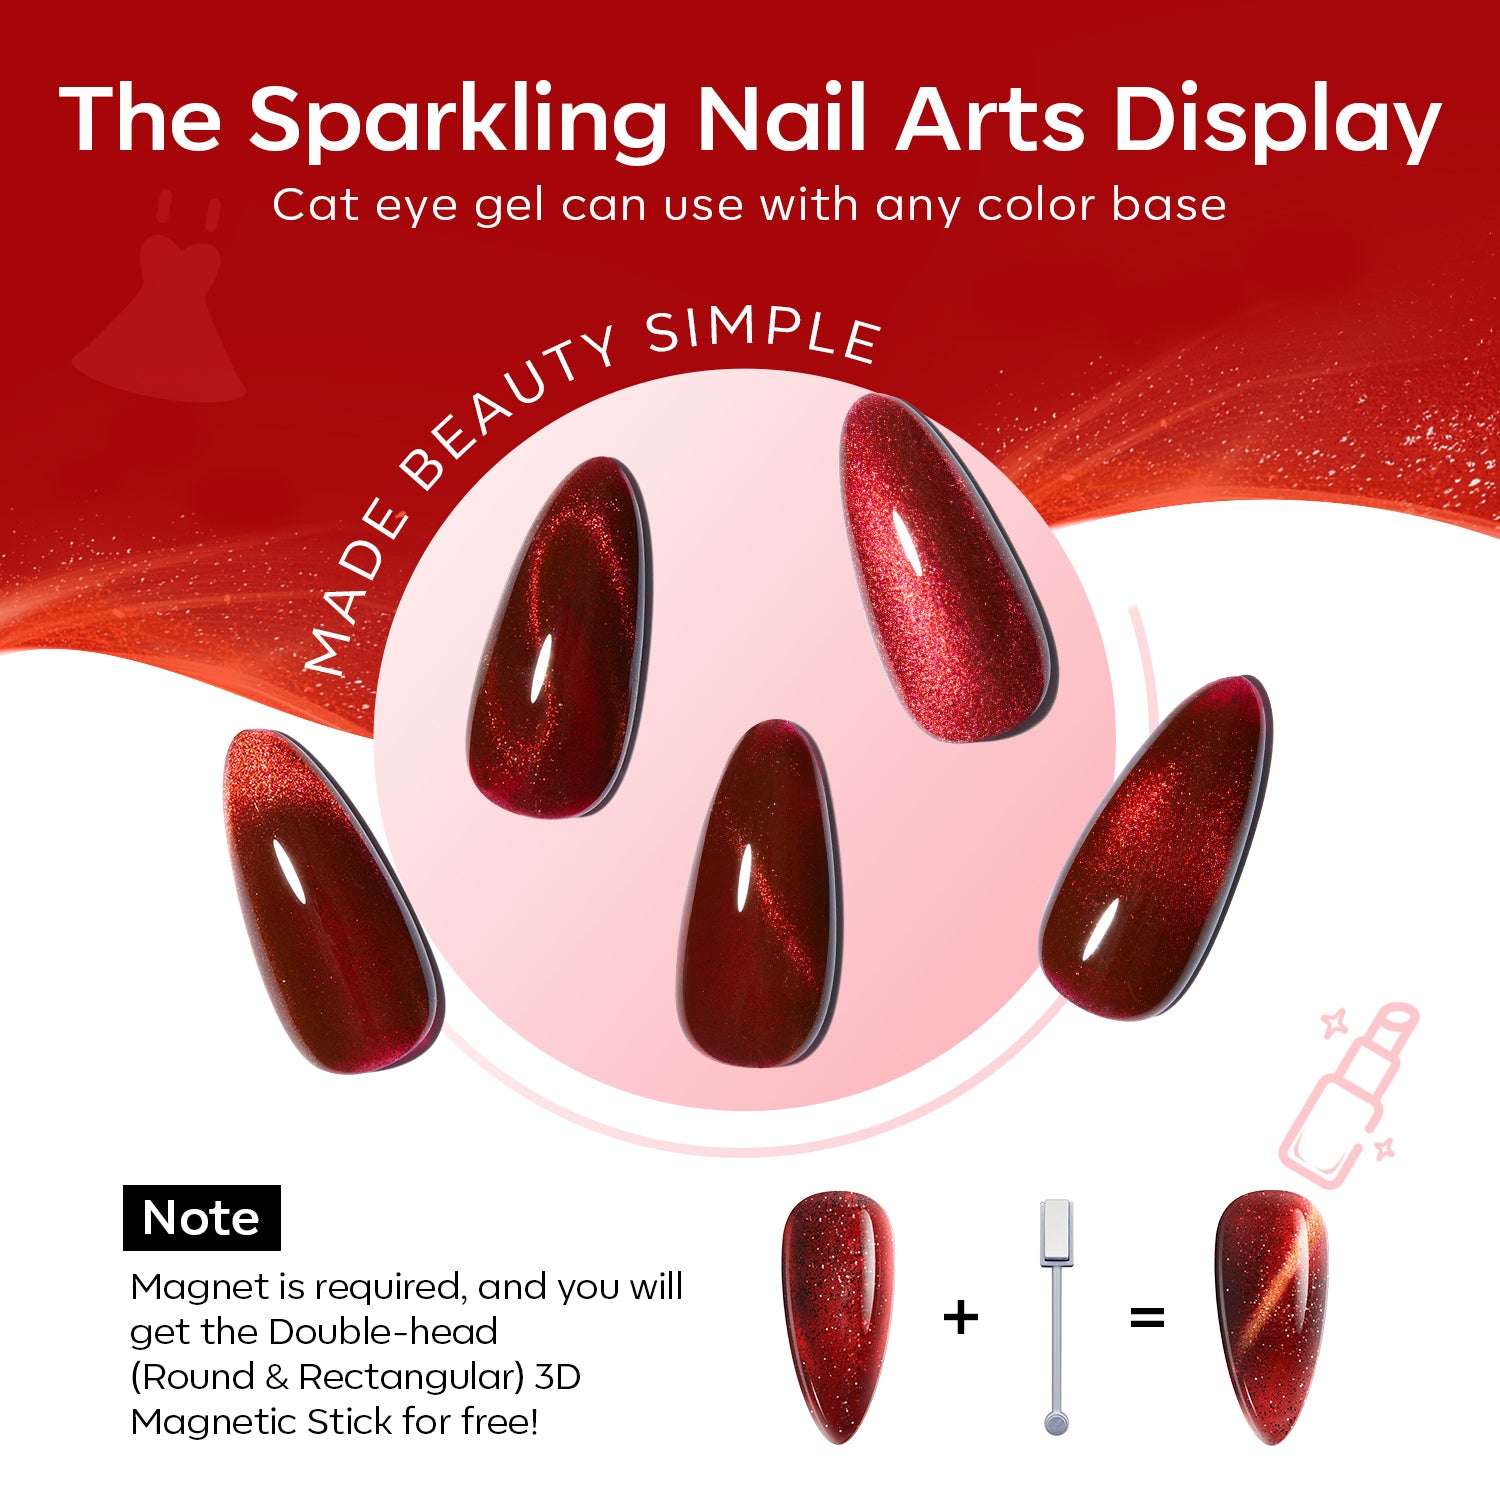 Ruby Sparks - 6 Shades Gel Nail Polish Set